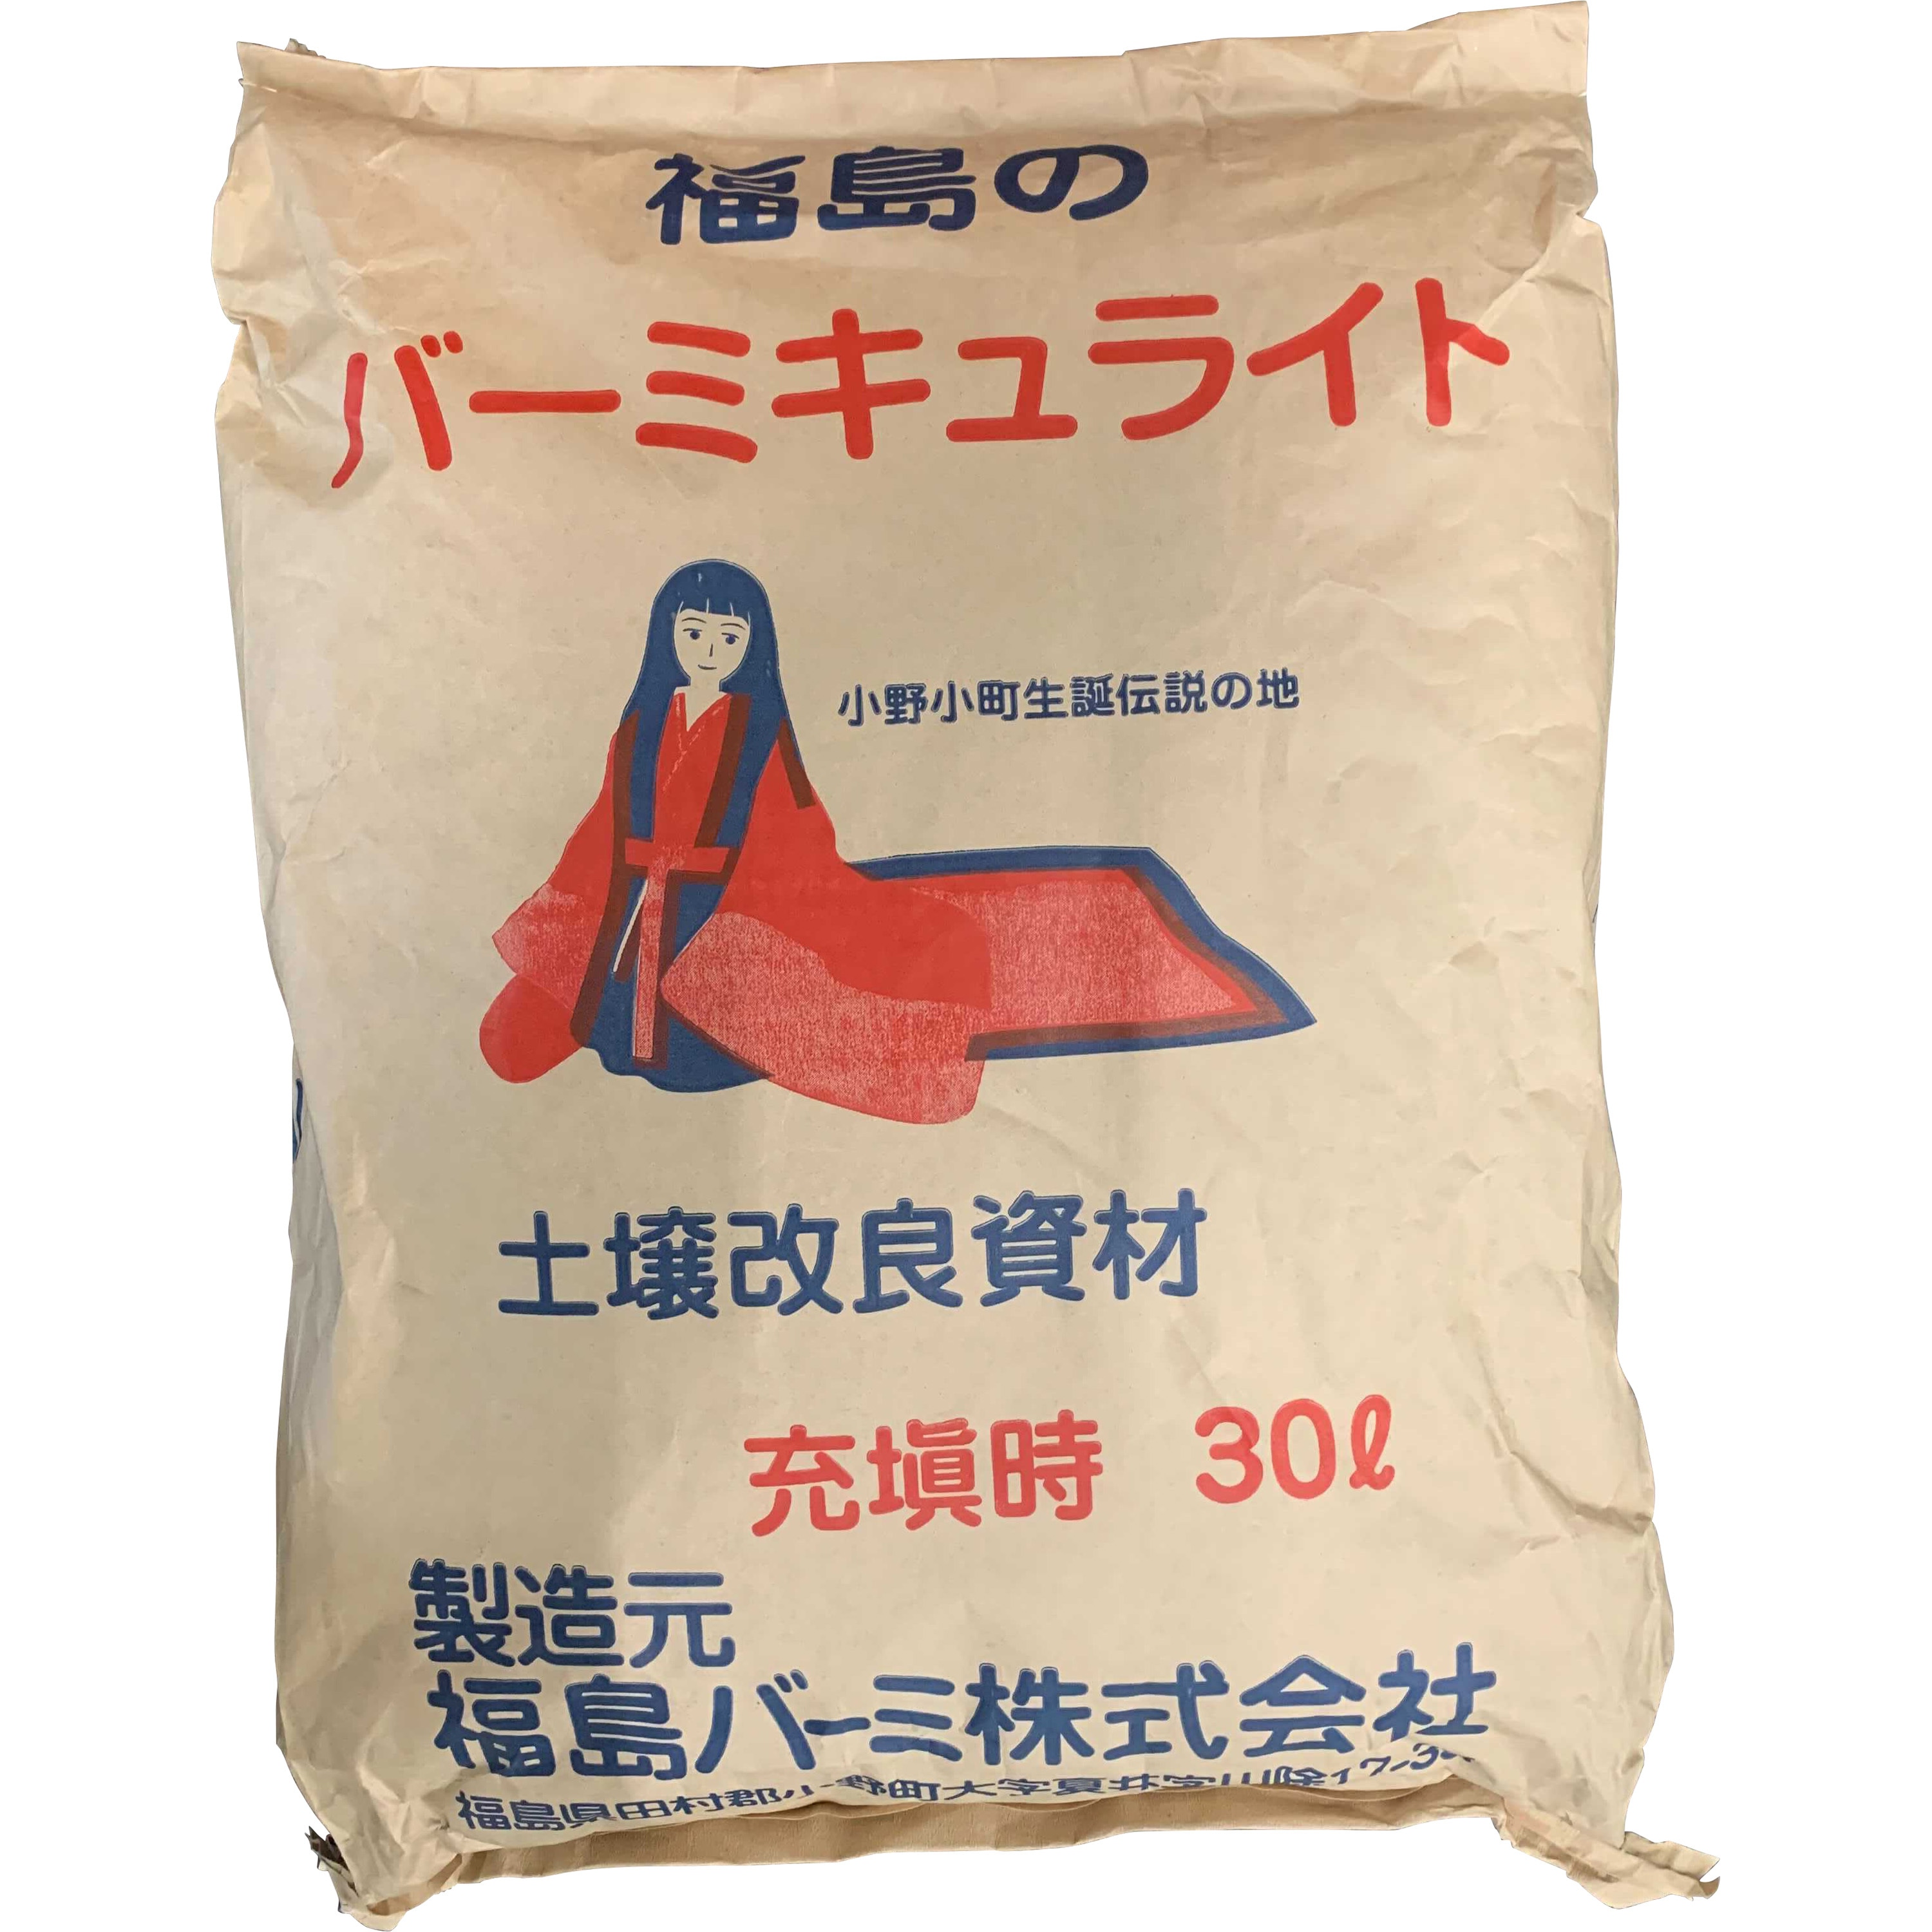 バーミキュライト 1袋 5kg あかぎ園芸 通販サイトmonotaro